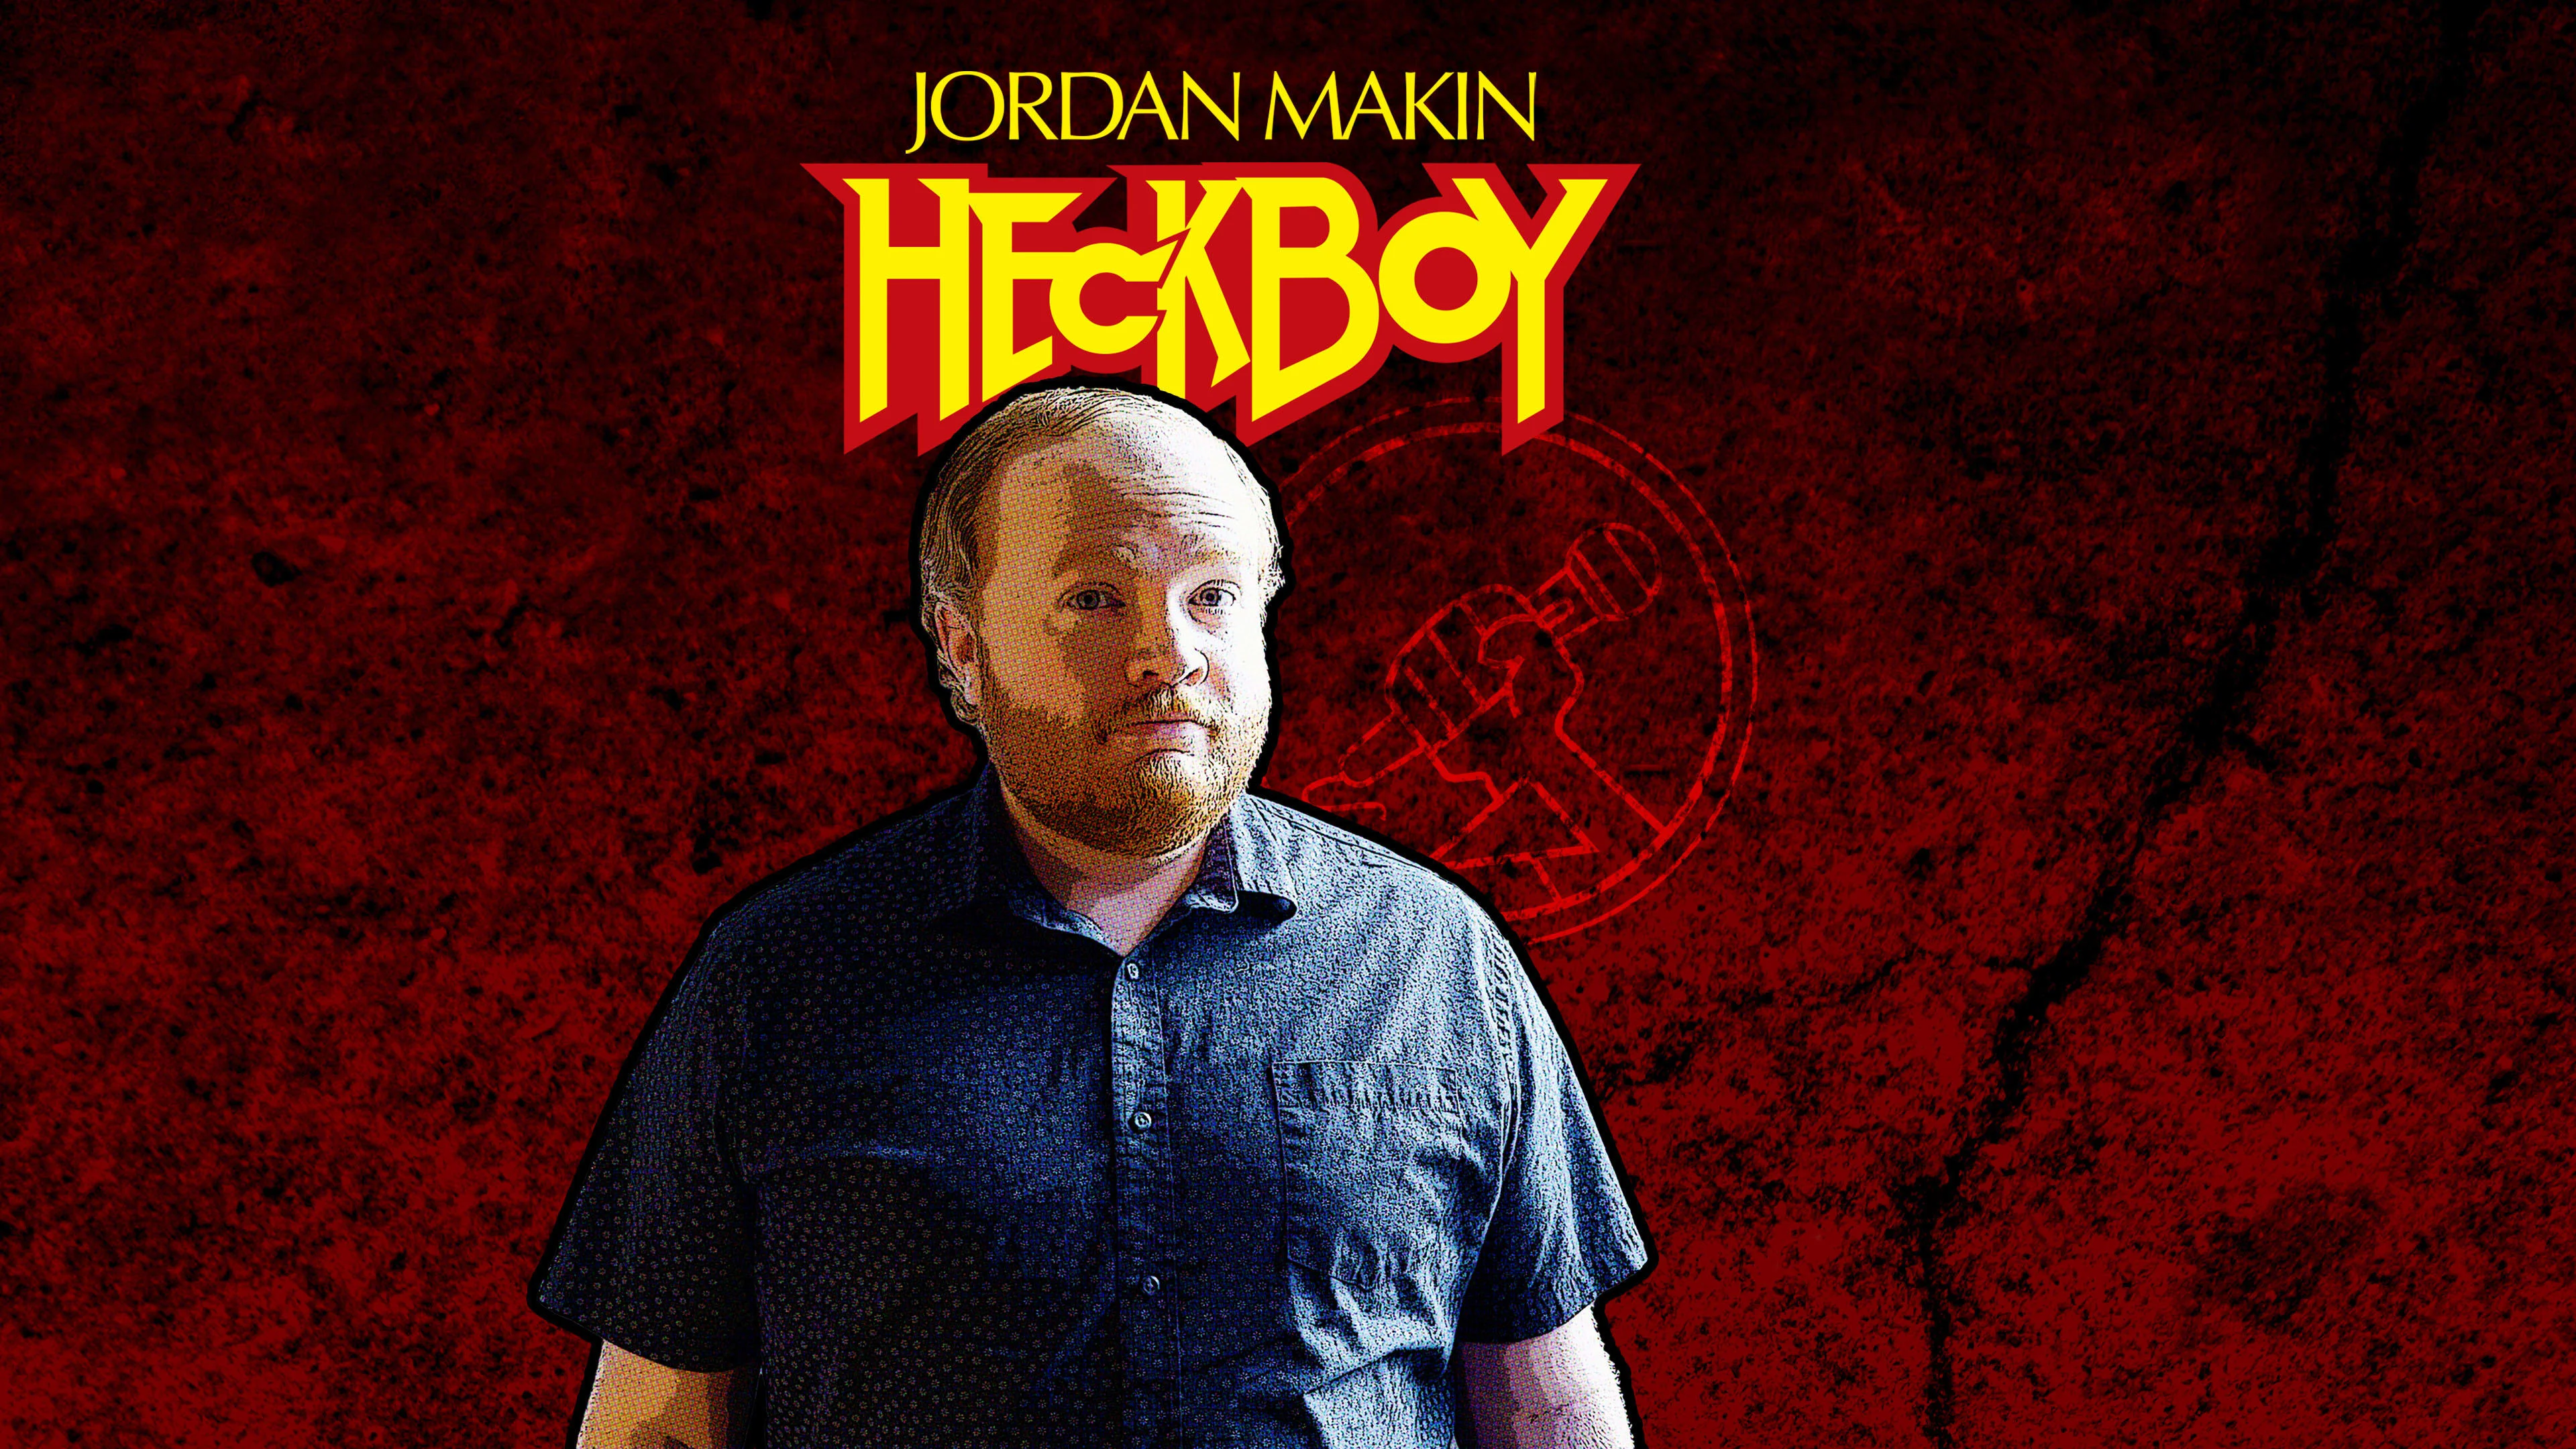 Jordan Makin - Heckboy